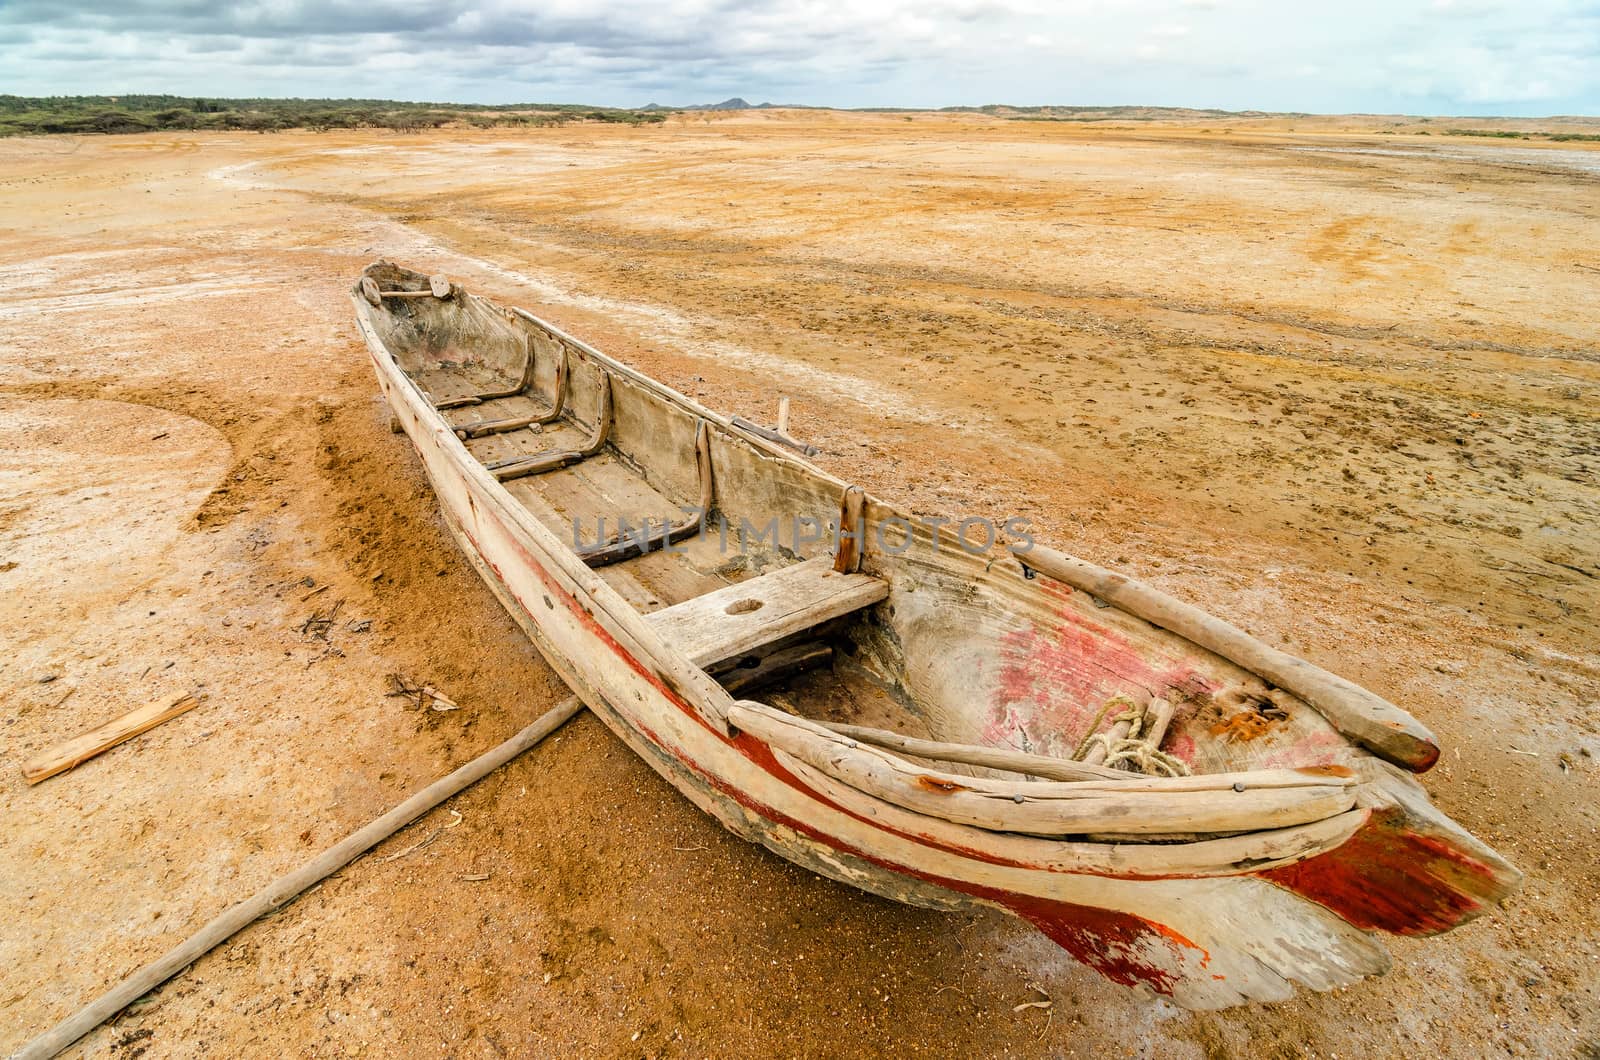 Old Canoe in a Desert by jkraft5